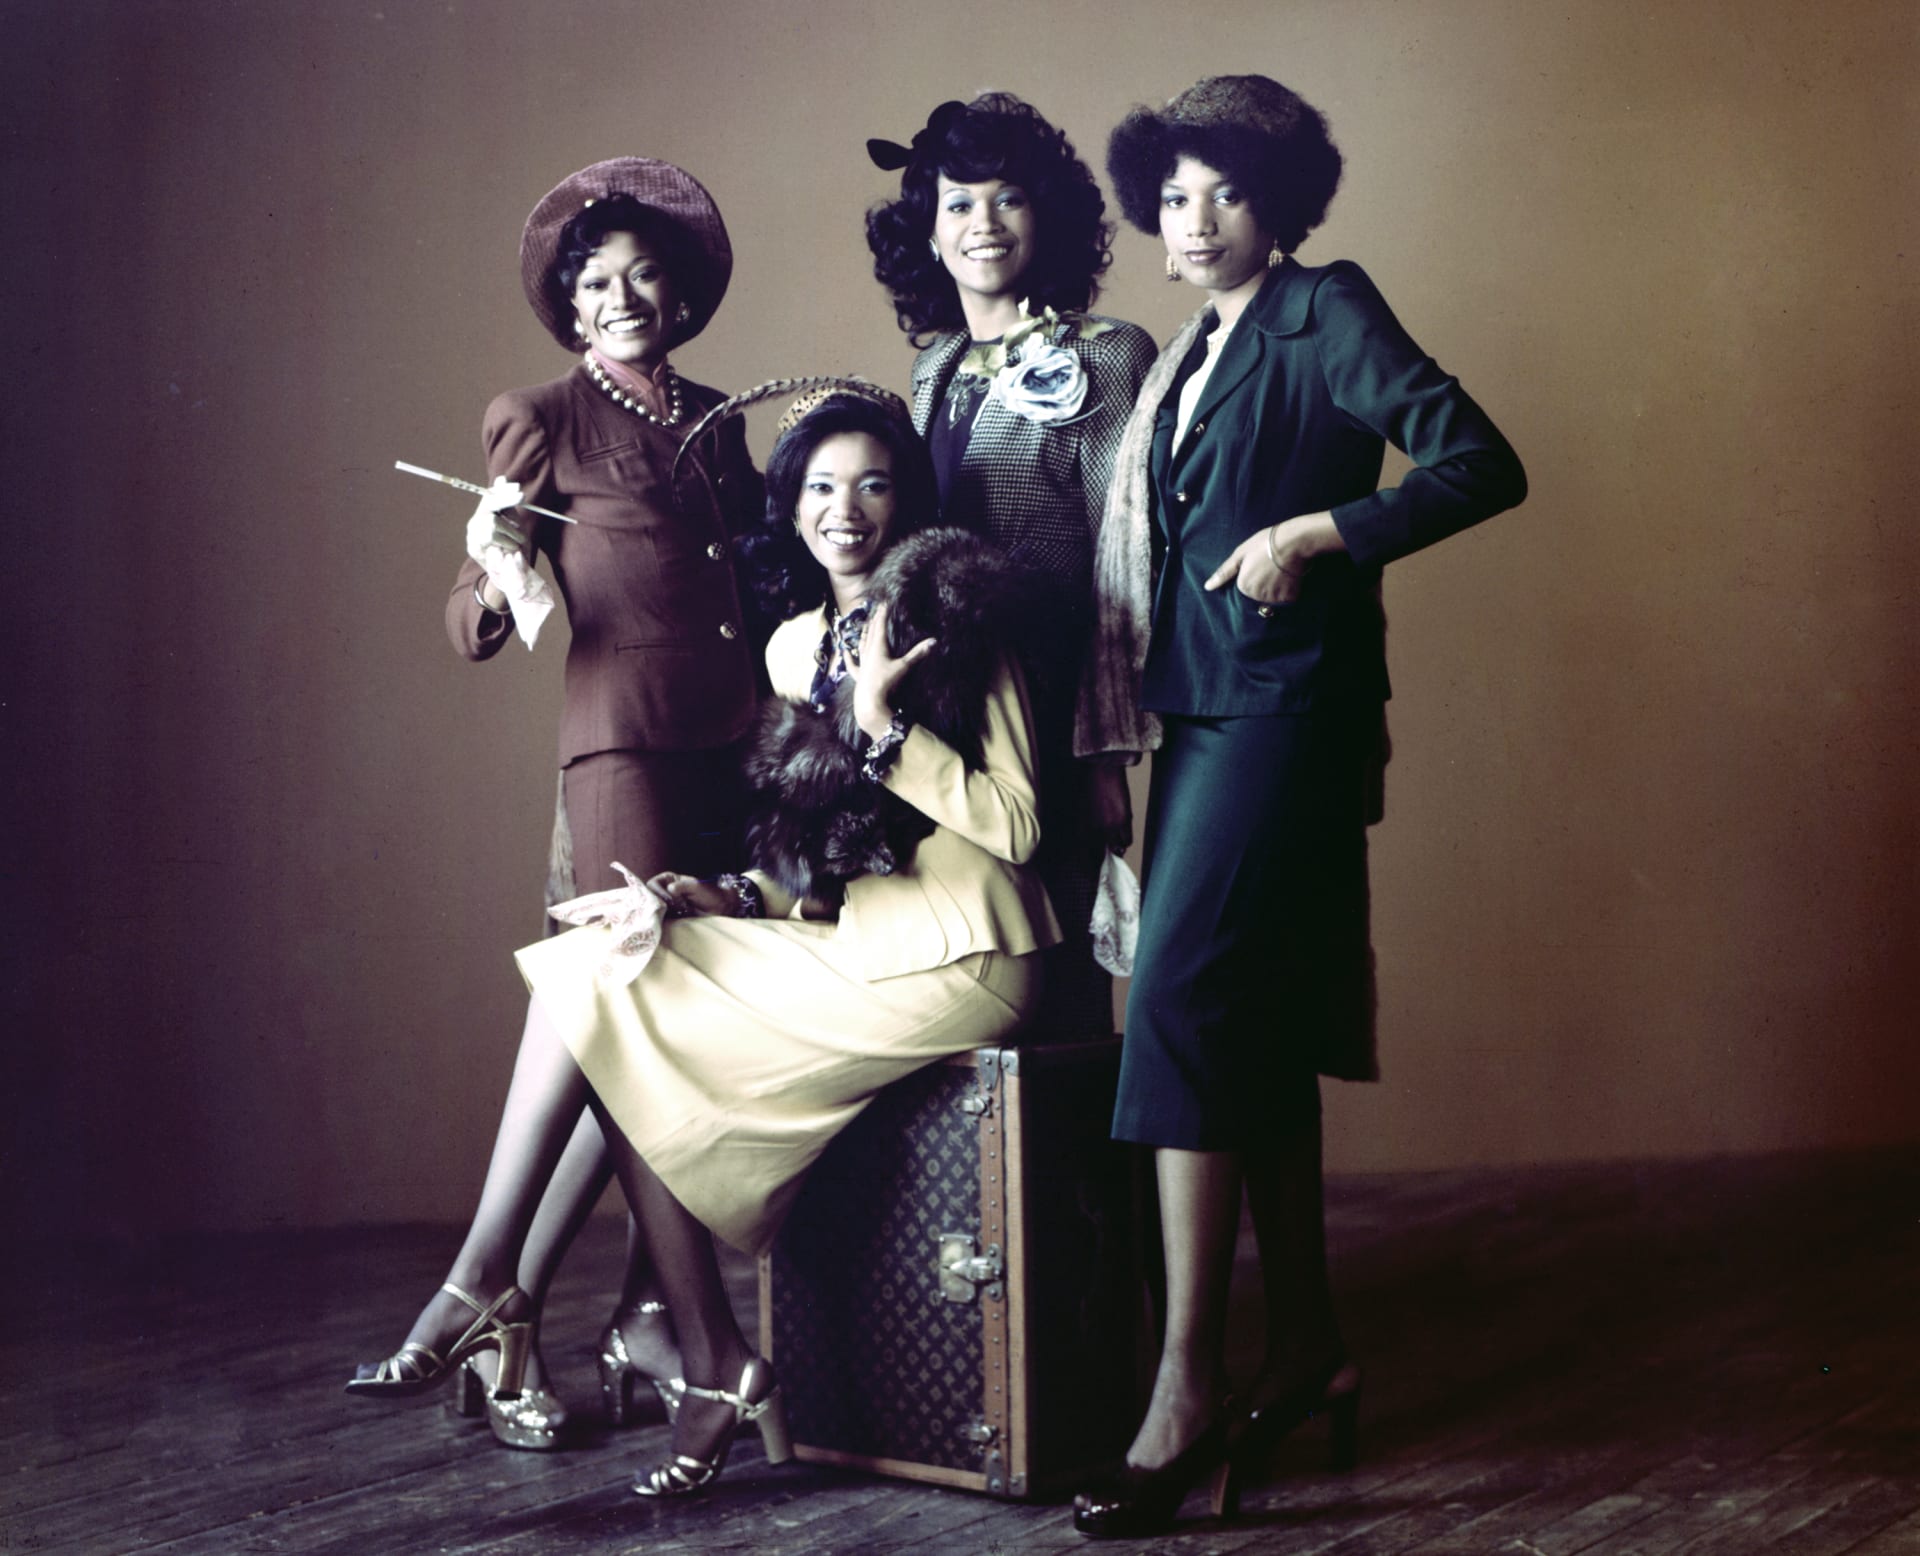 Čtveřice sester Pointerových dosáhla i na hudební ocenění Grammy.